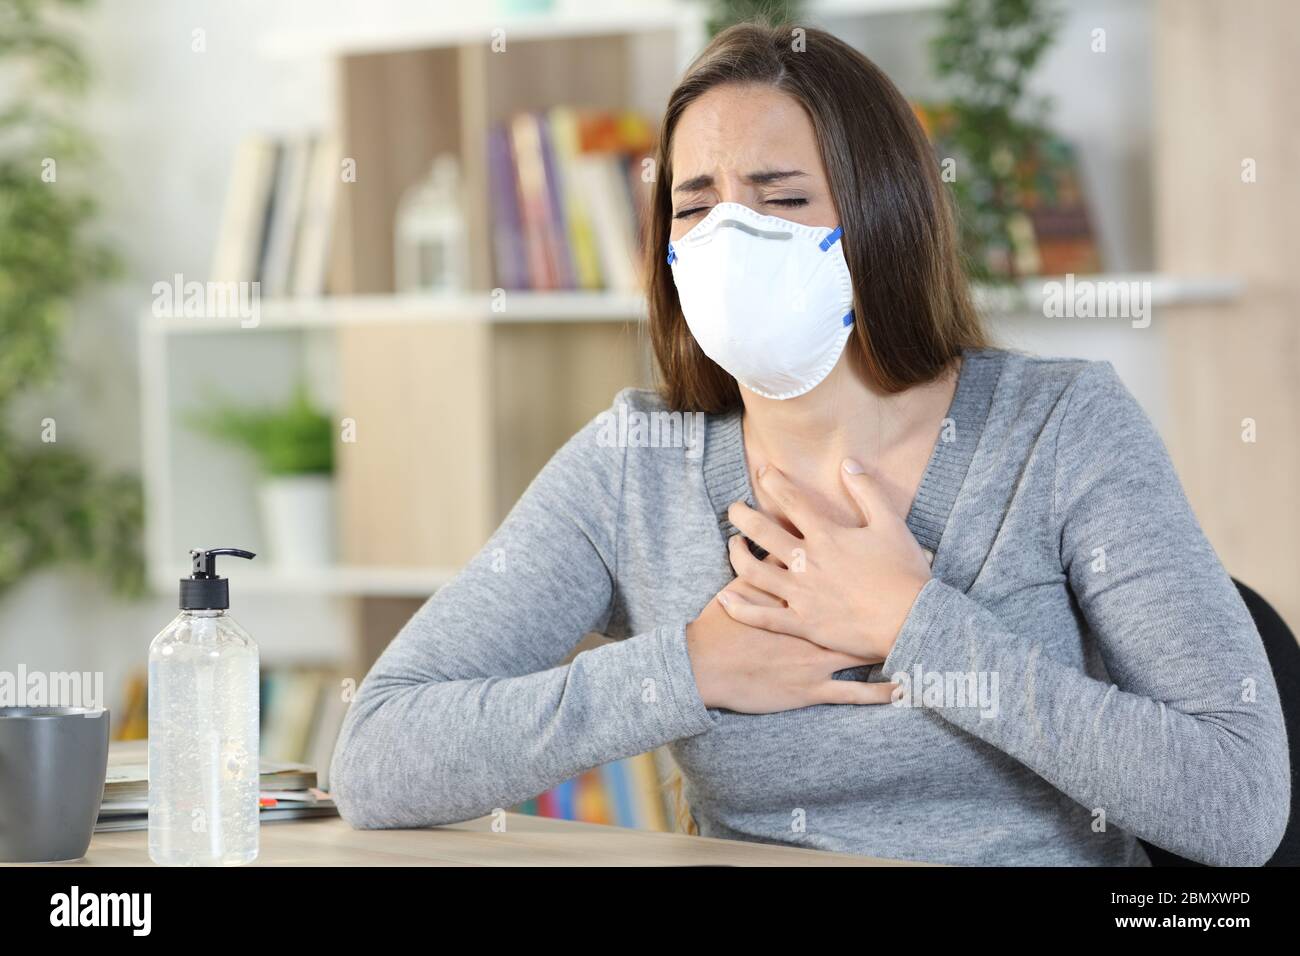 Malade femme de coronavirus avec masque protecteur suffocant tenant la poitrine assis à la maison Banque D'Images